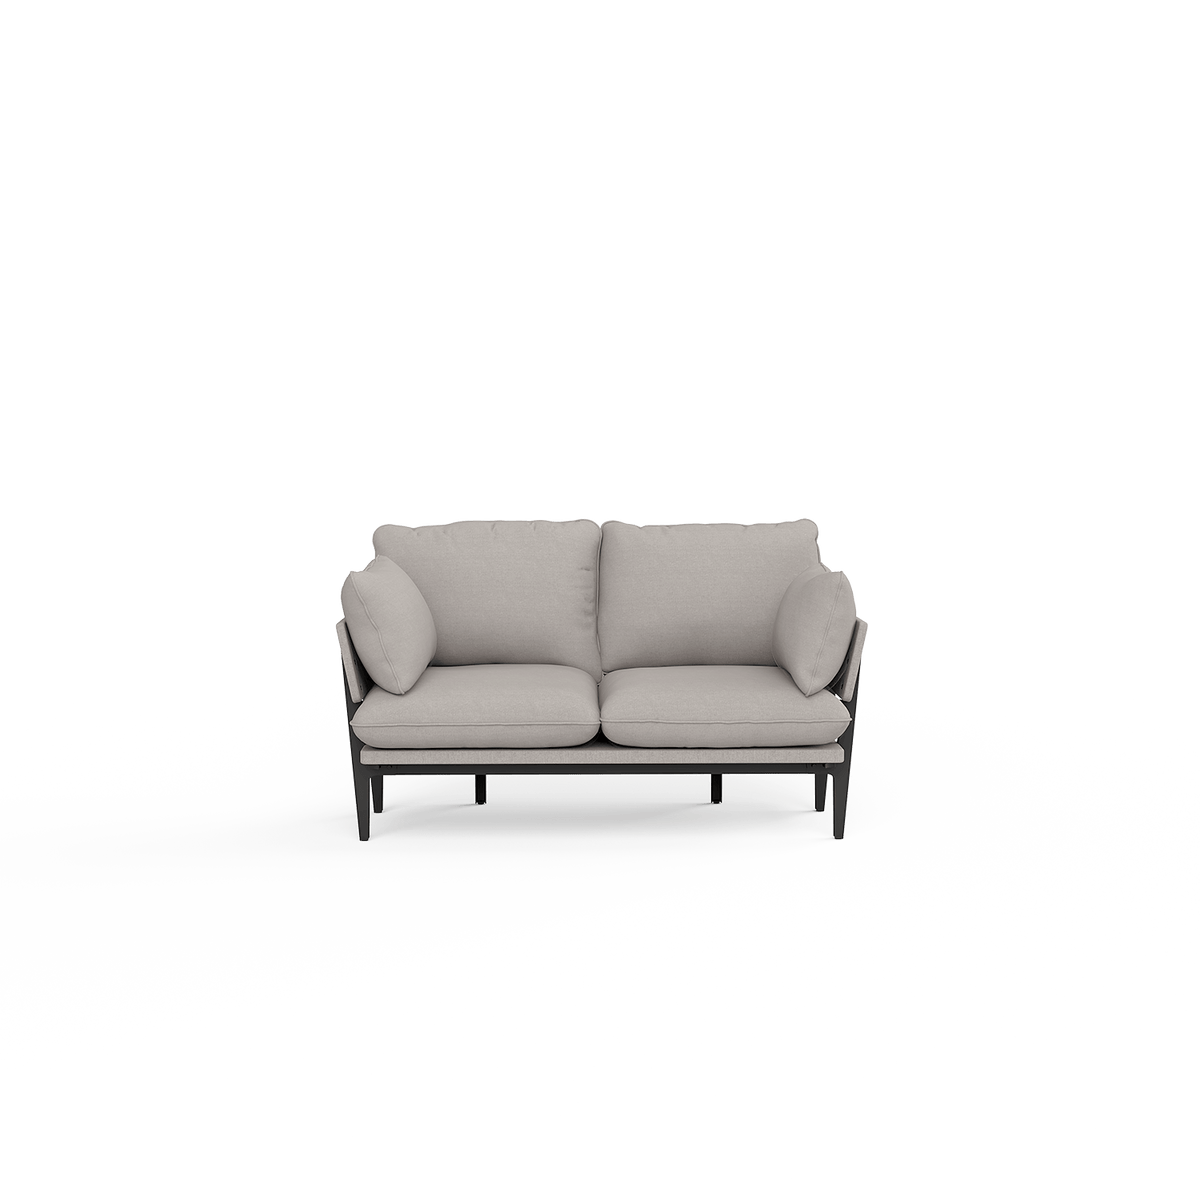 The Sofa  Sofa